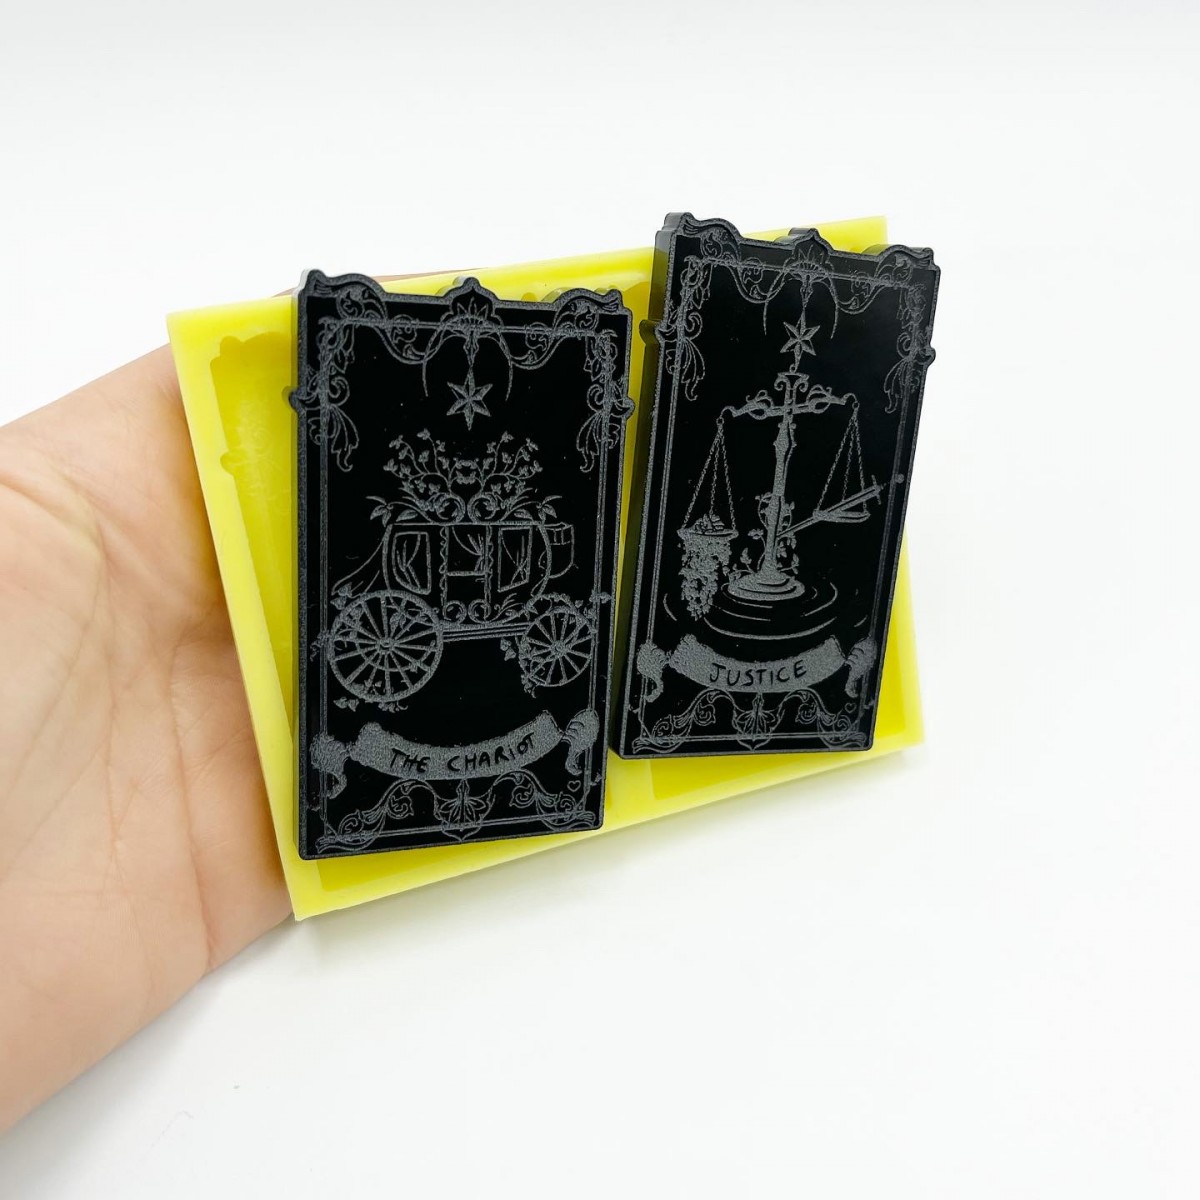 Ensemble de "Justice" et "The Chariot" Tarot Tarot Cards Moule - taille moyenne